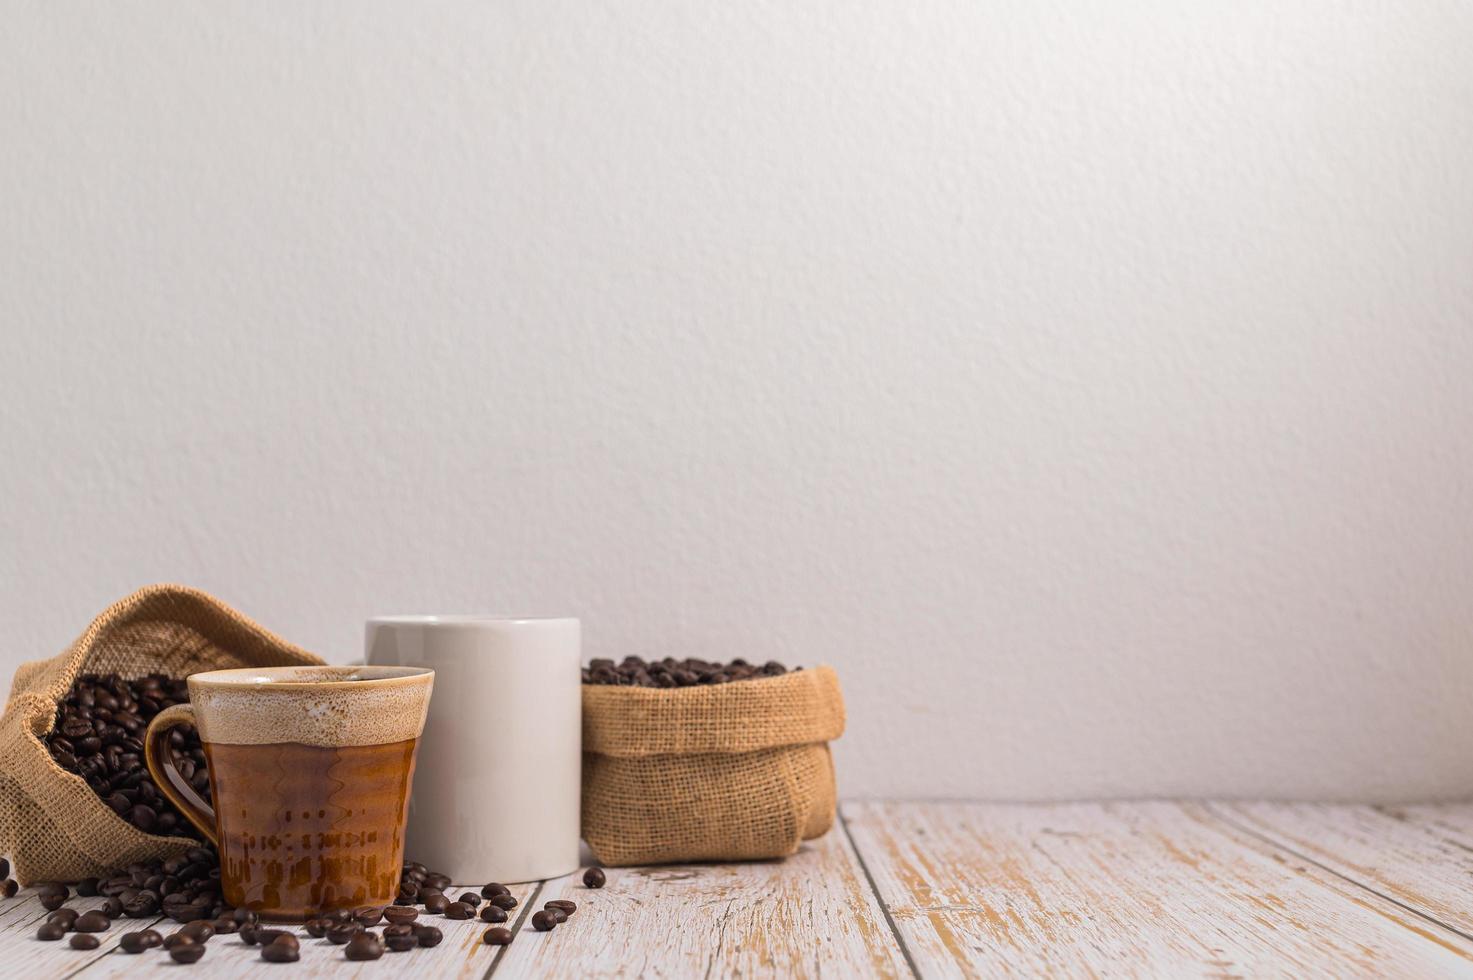 Kaffeetassen und Beutel mit Kaffeebohnen auf einem Holztisch foto